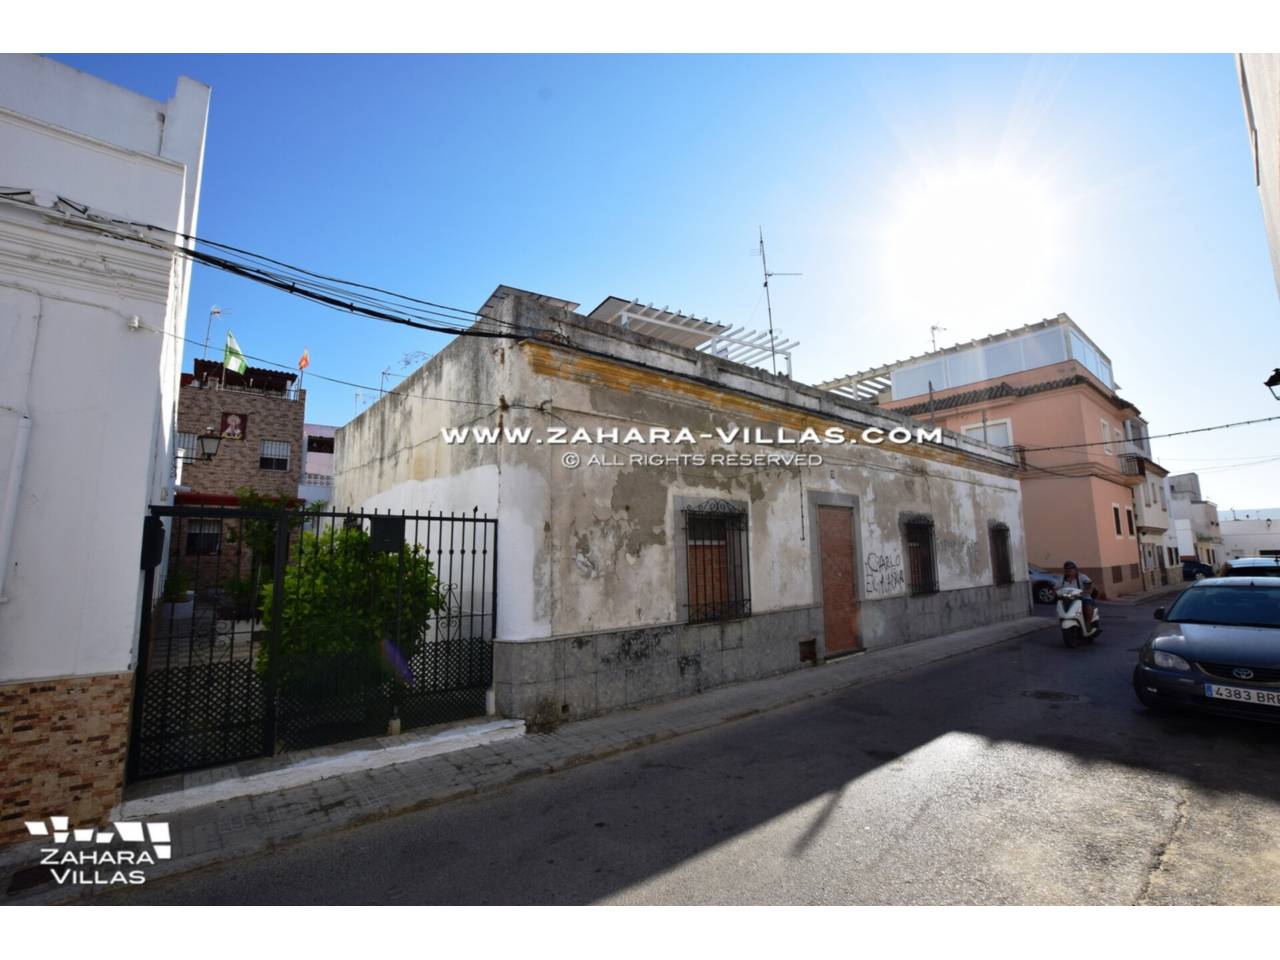 Imagen 5 de Gebäude zu verkaufen in Barbate, ganz in der Nähe des Strandes von Playa del Carmen